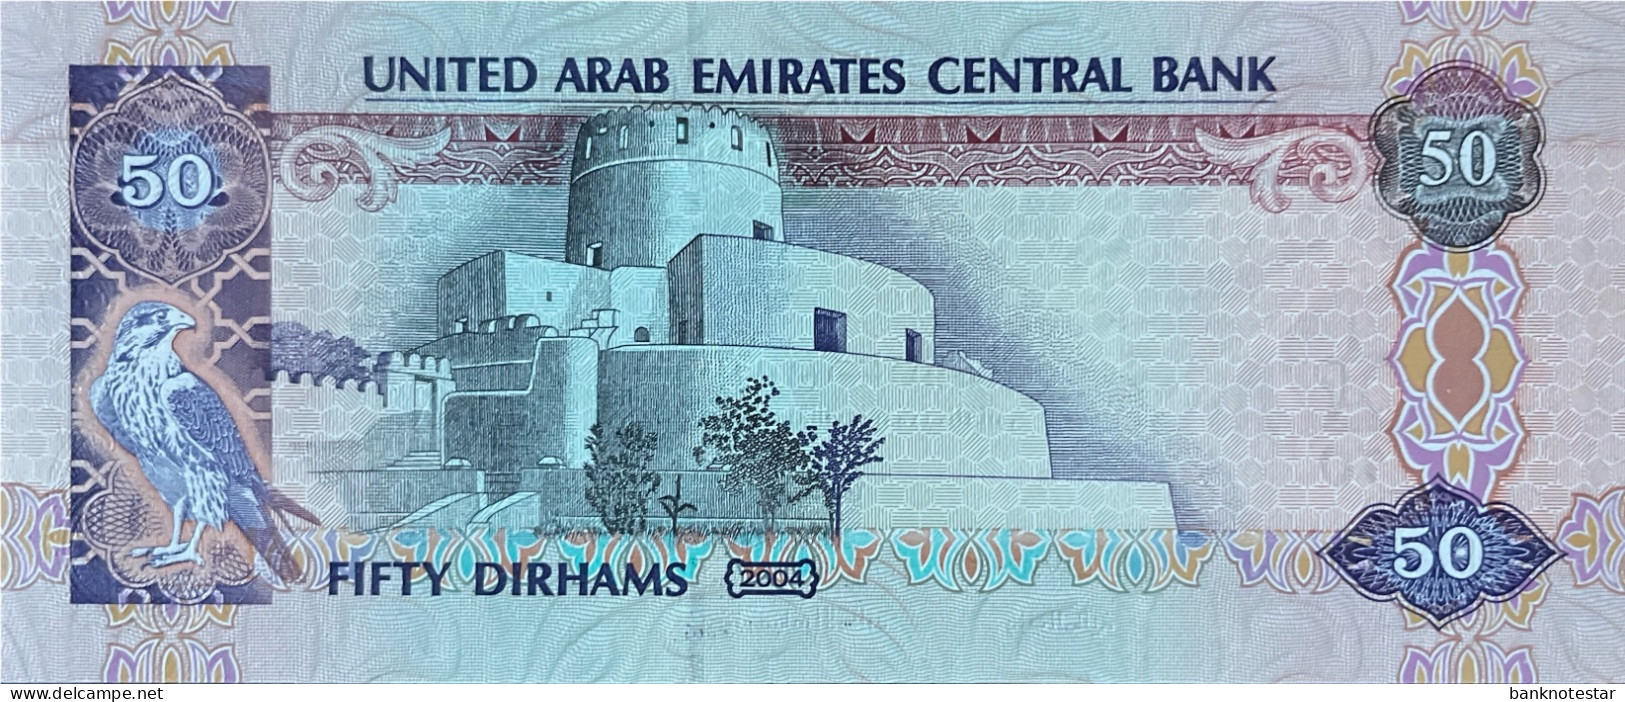 United Arab Emirates 50 Dirhams, P-29a (2004) - UNC - Prefix 01 - Ver. Arab. Emirate